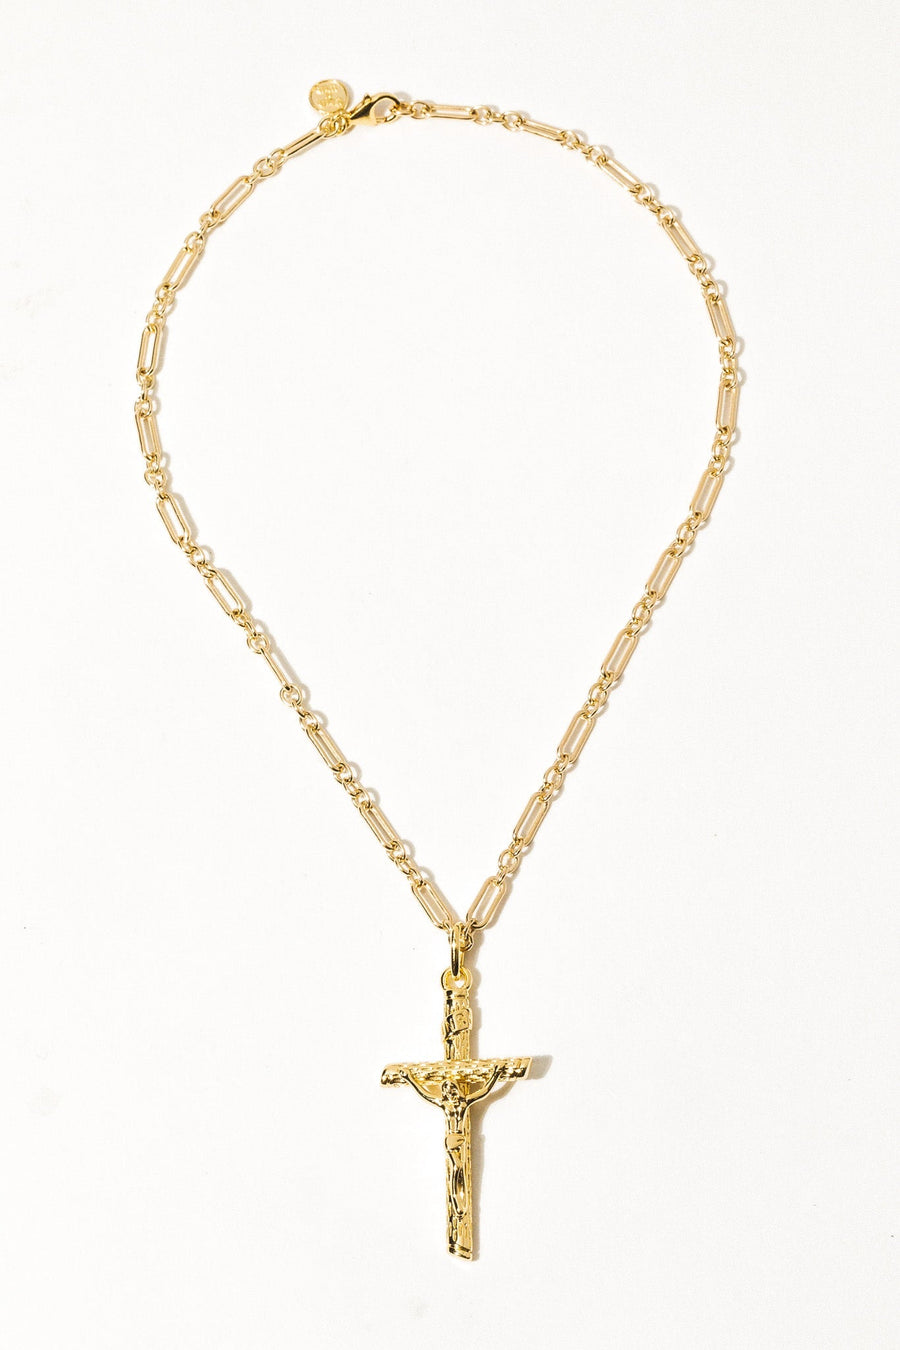 Dona Italia Jewelry Gold / 20 Inches Mio Santo Crocifisso Necklace